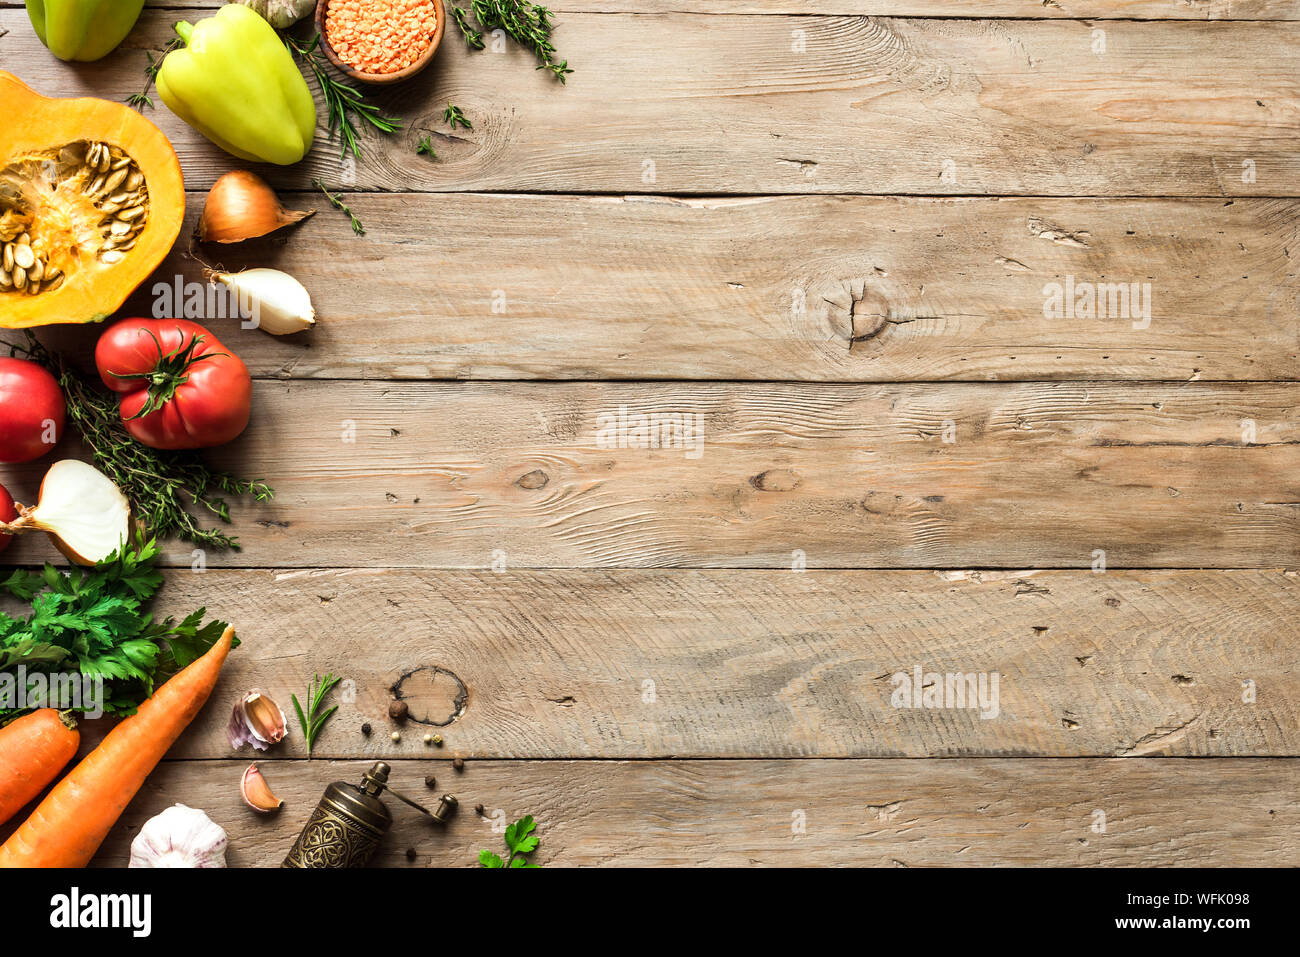 Automne fond de cuisson avec les légumes bio de saison sur table en bois, vue du dessus, copiez l'espace. Ingrédients pour les soupes et plats de saison automne. Banque D'Images